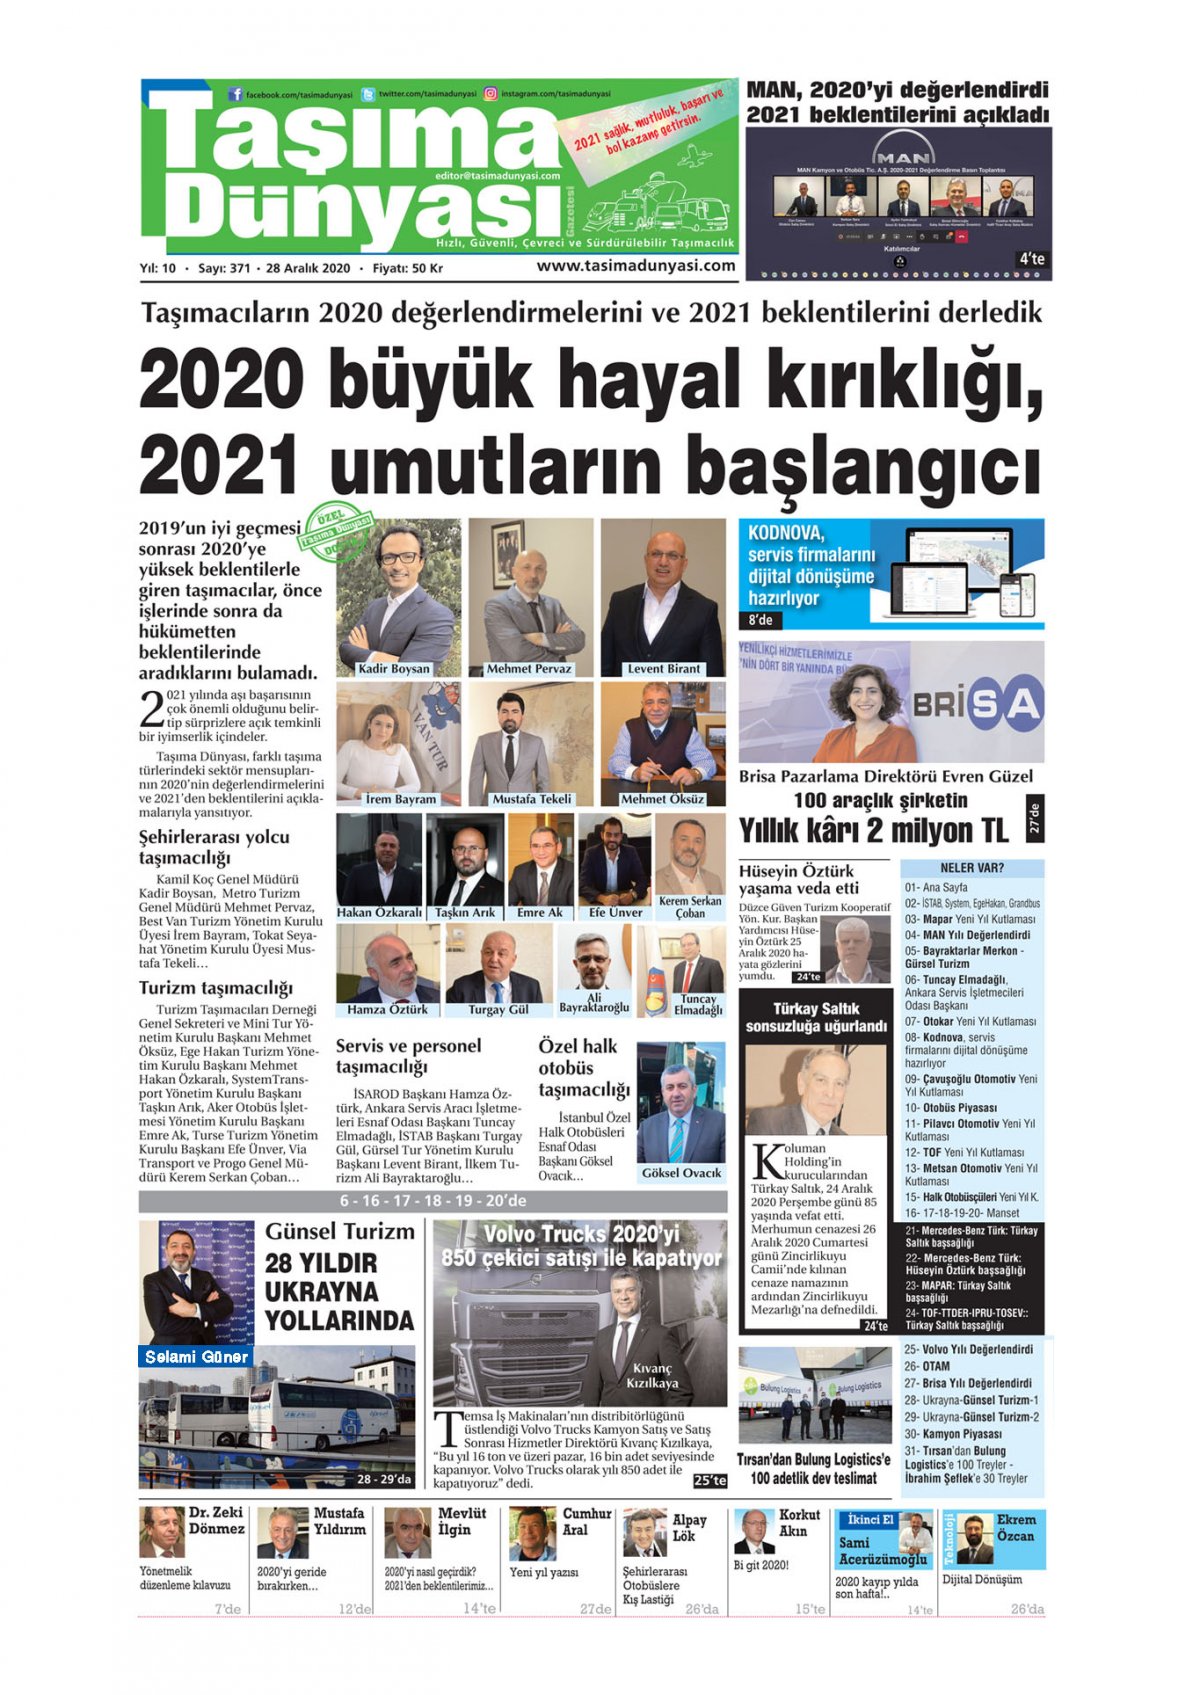 Taşıma Dünyası Gazetesi - 29.12.2020 Manşeti